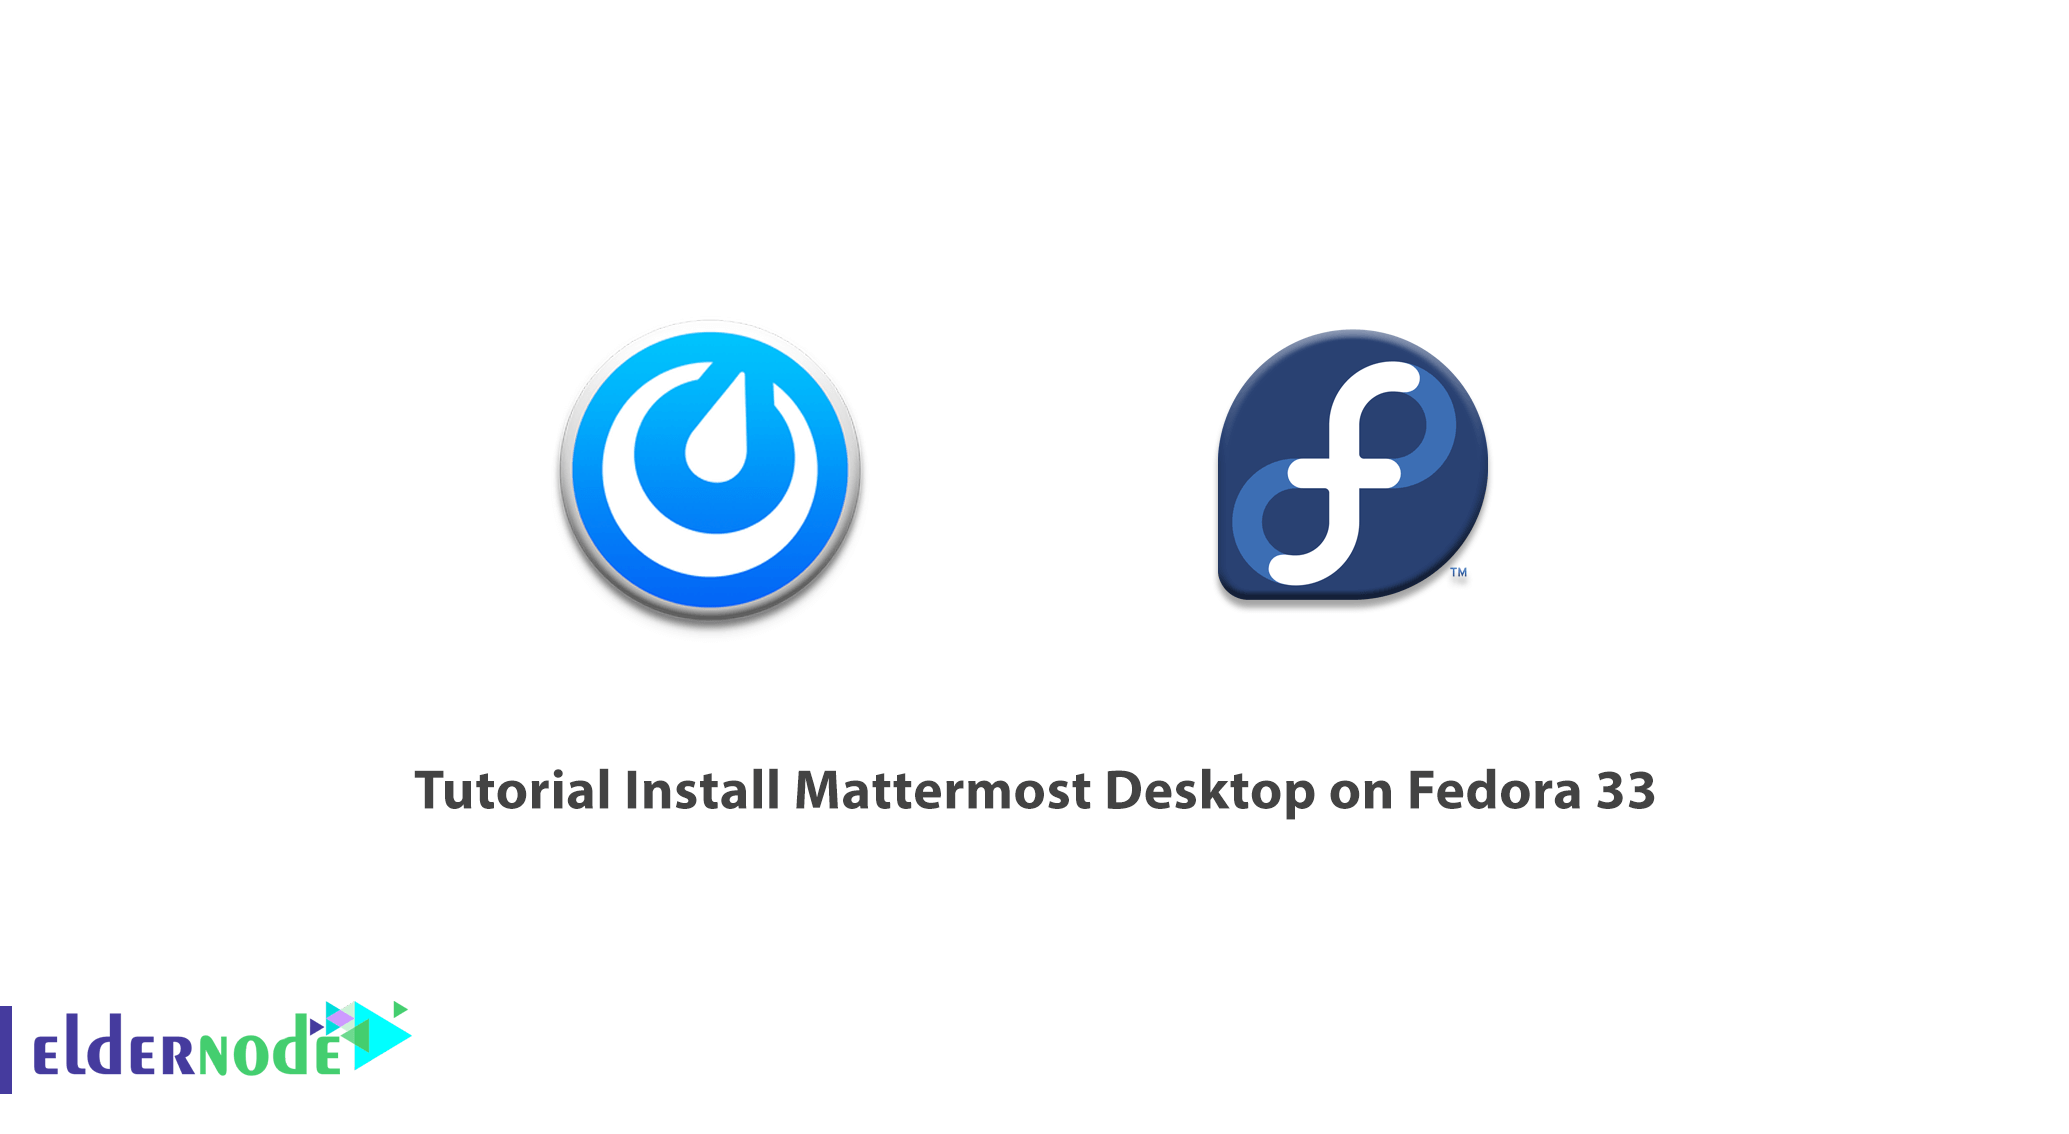 Tutorial Install Mattermost Desktop on Fedora 33